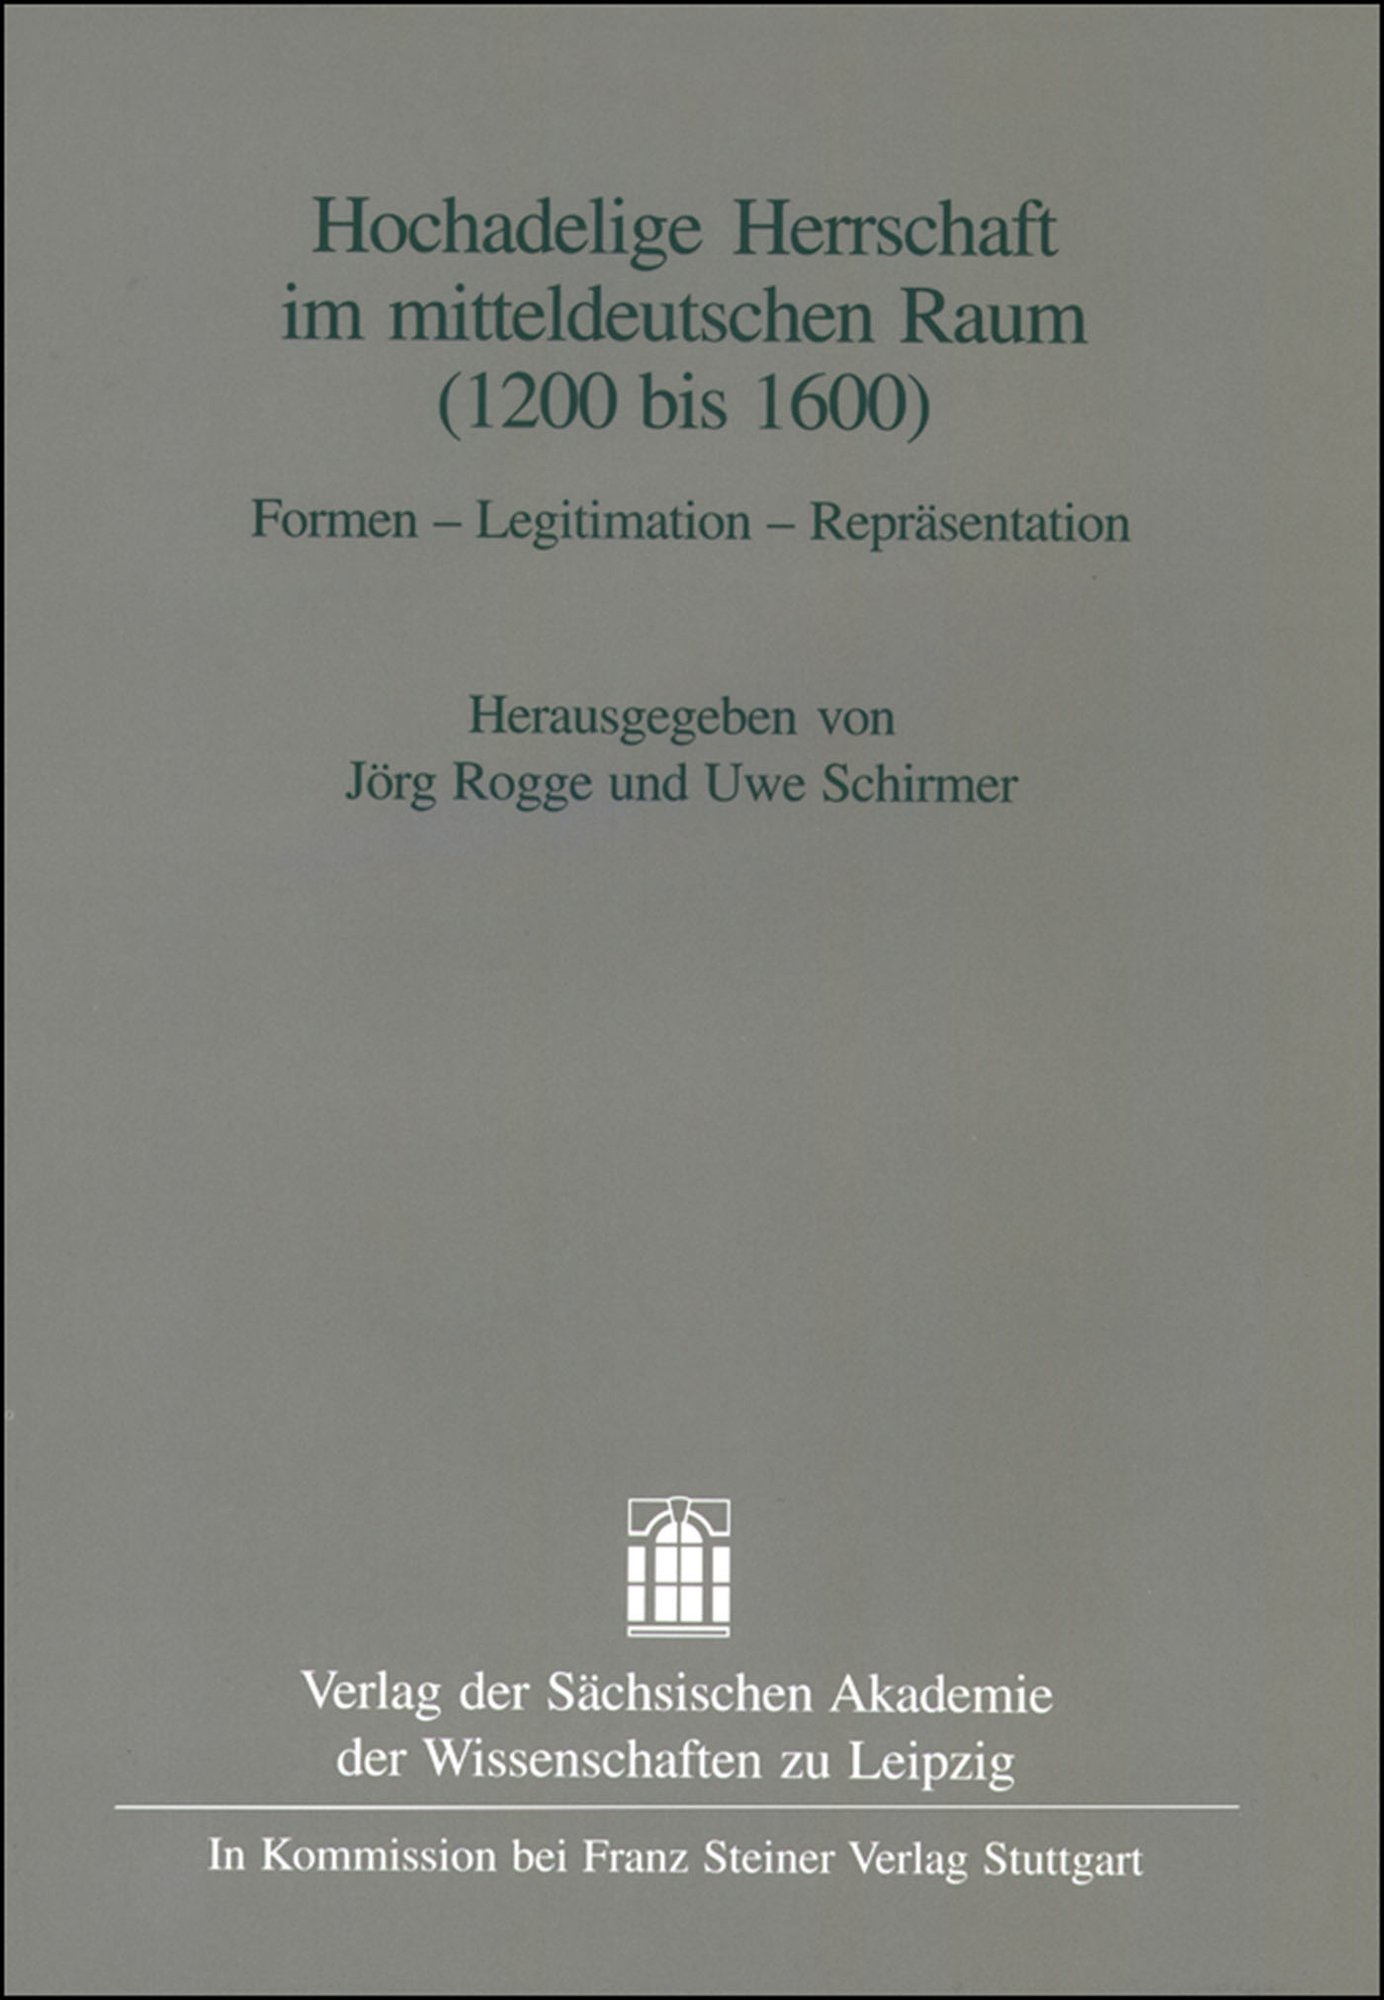 Hochadelige Herrschaft im mitteldeutschen Raum (1200-1600)